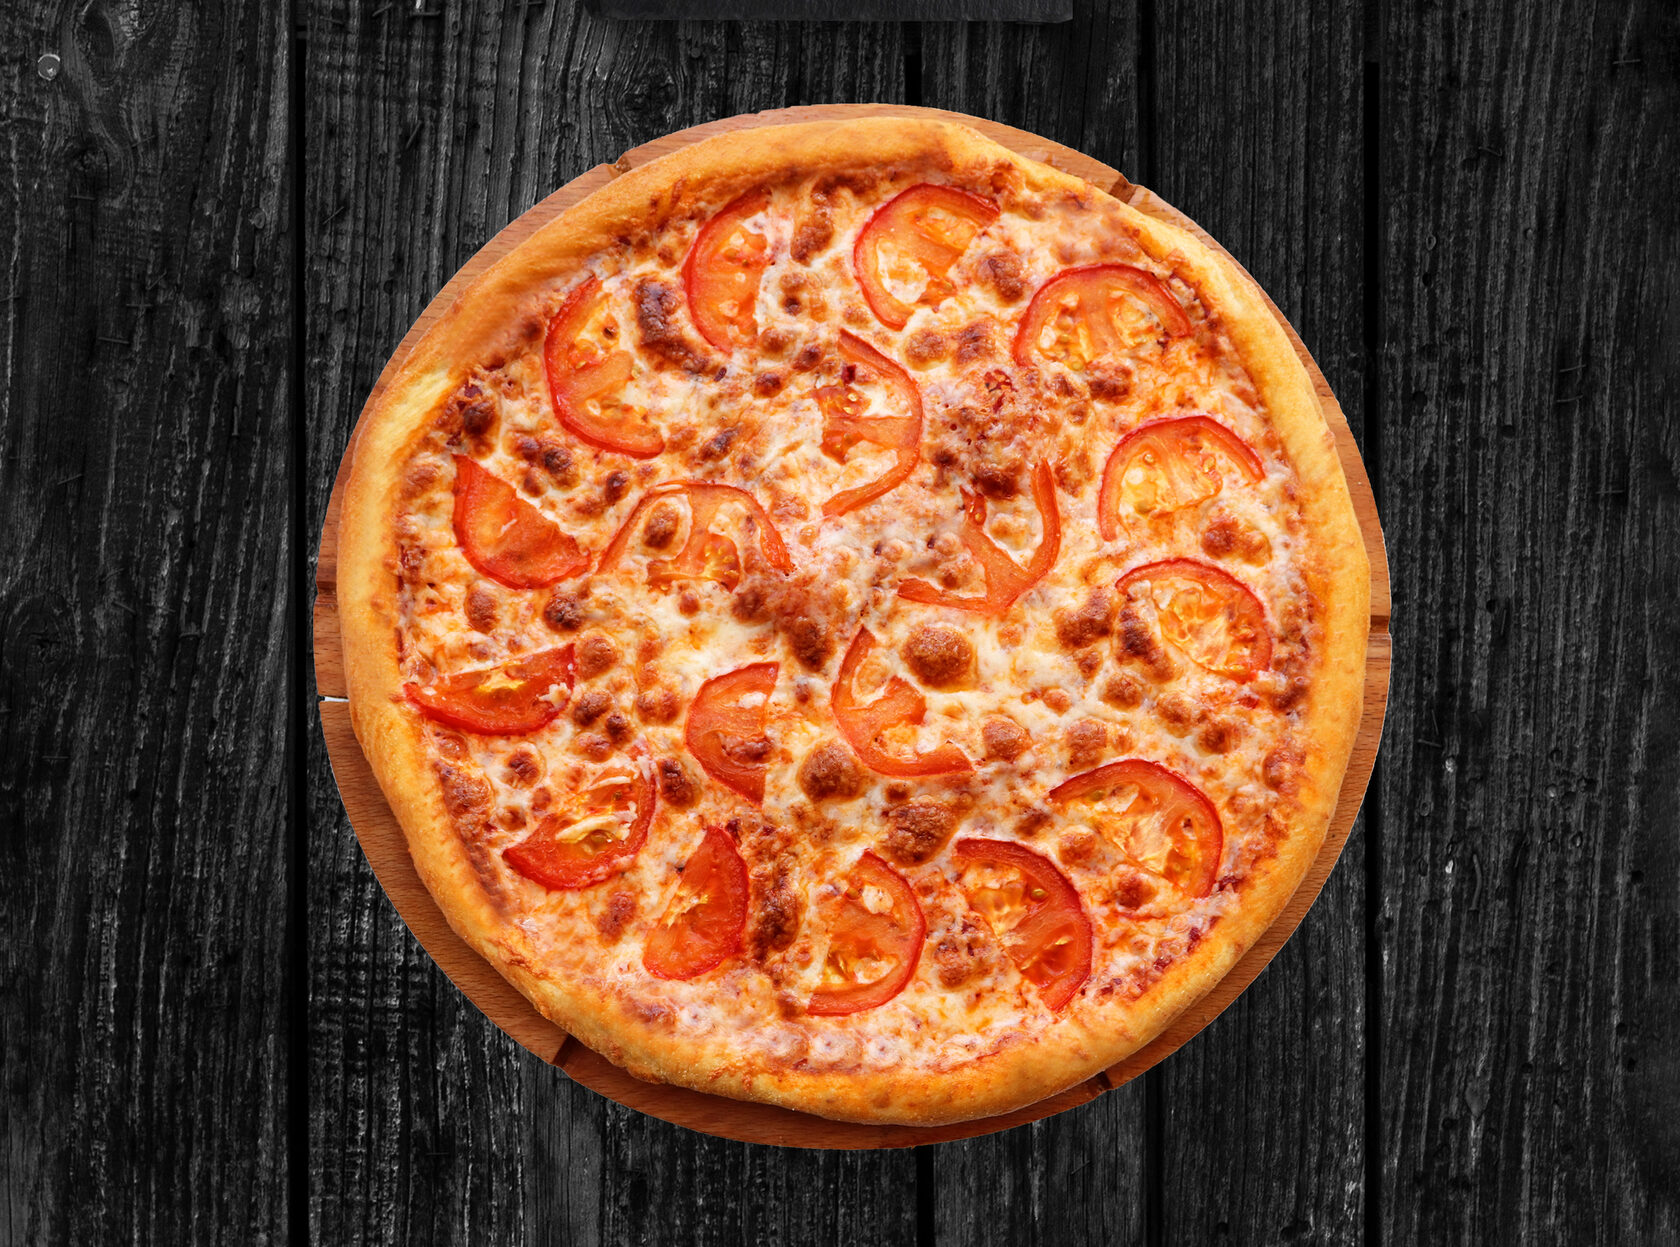 томатный соус для пиццы состав фото 111